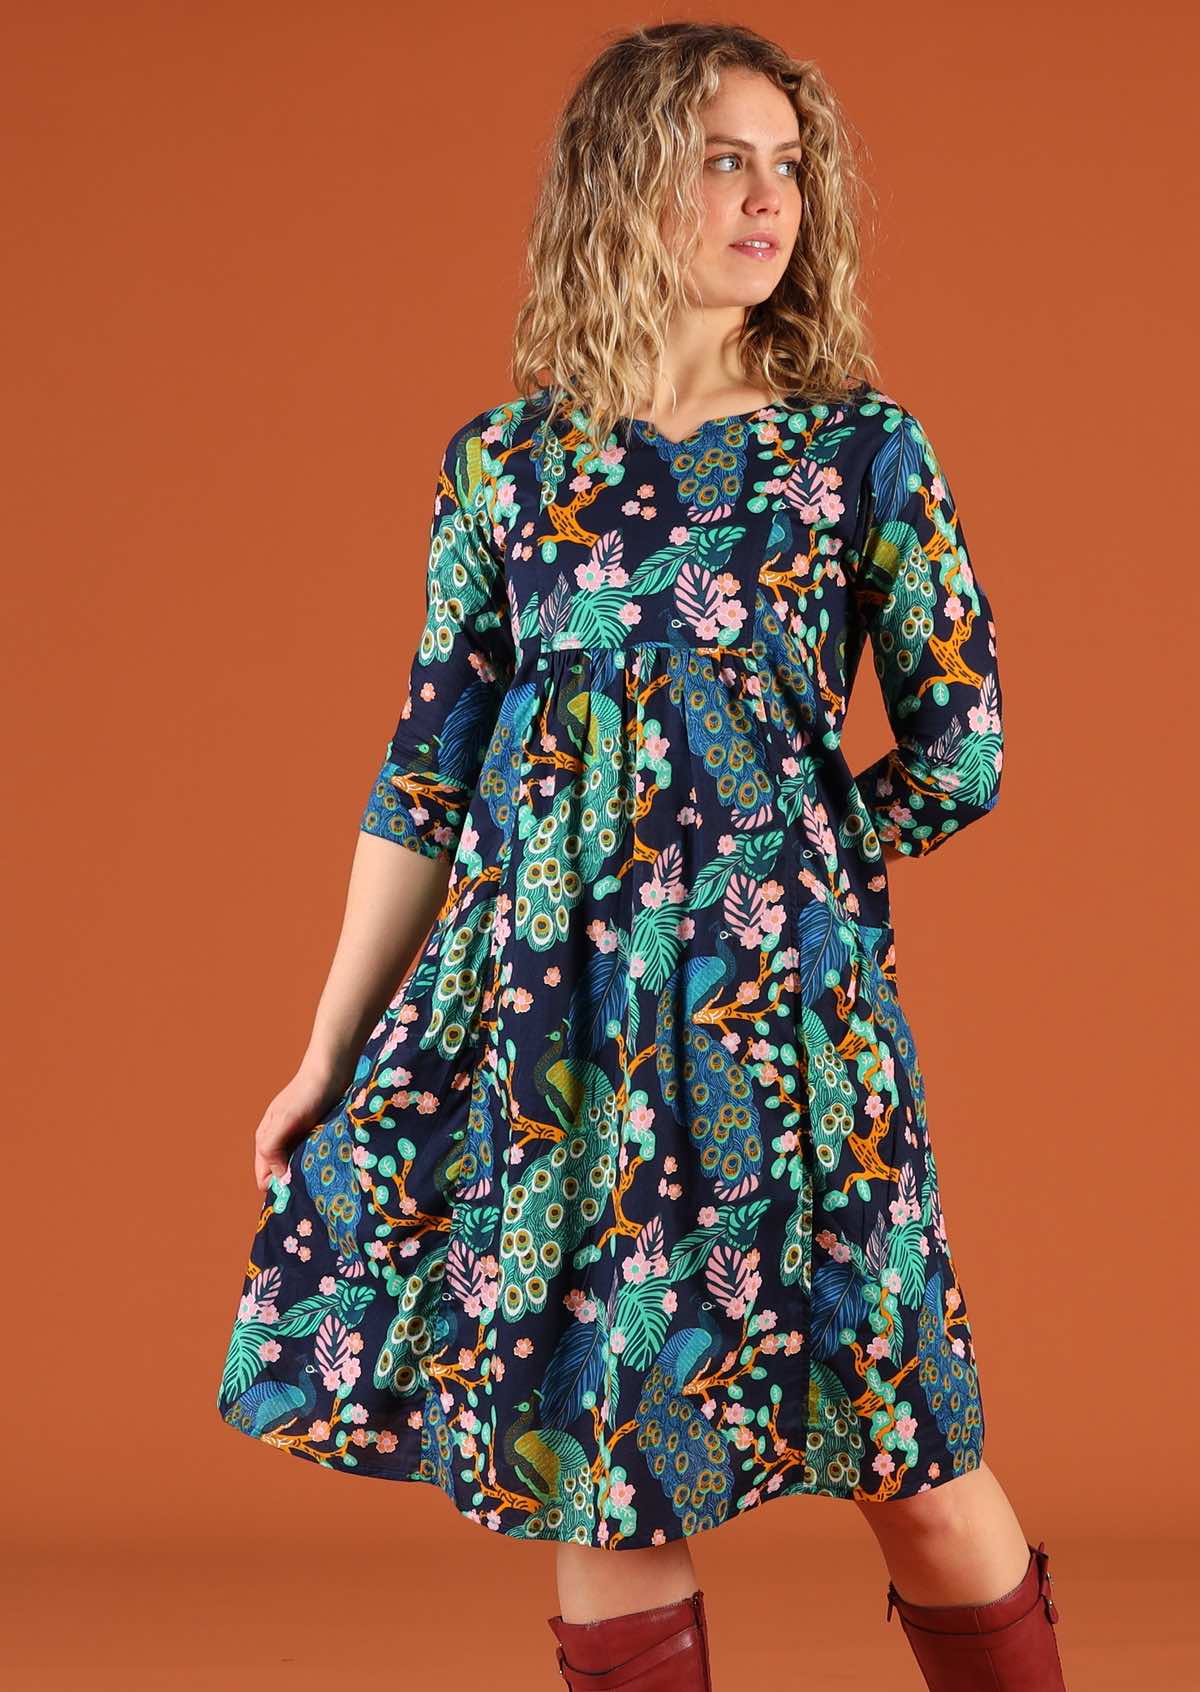 Knee Length Peacock Print Cotton Dress with Pockets | Karma East Australia